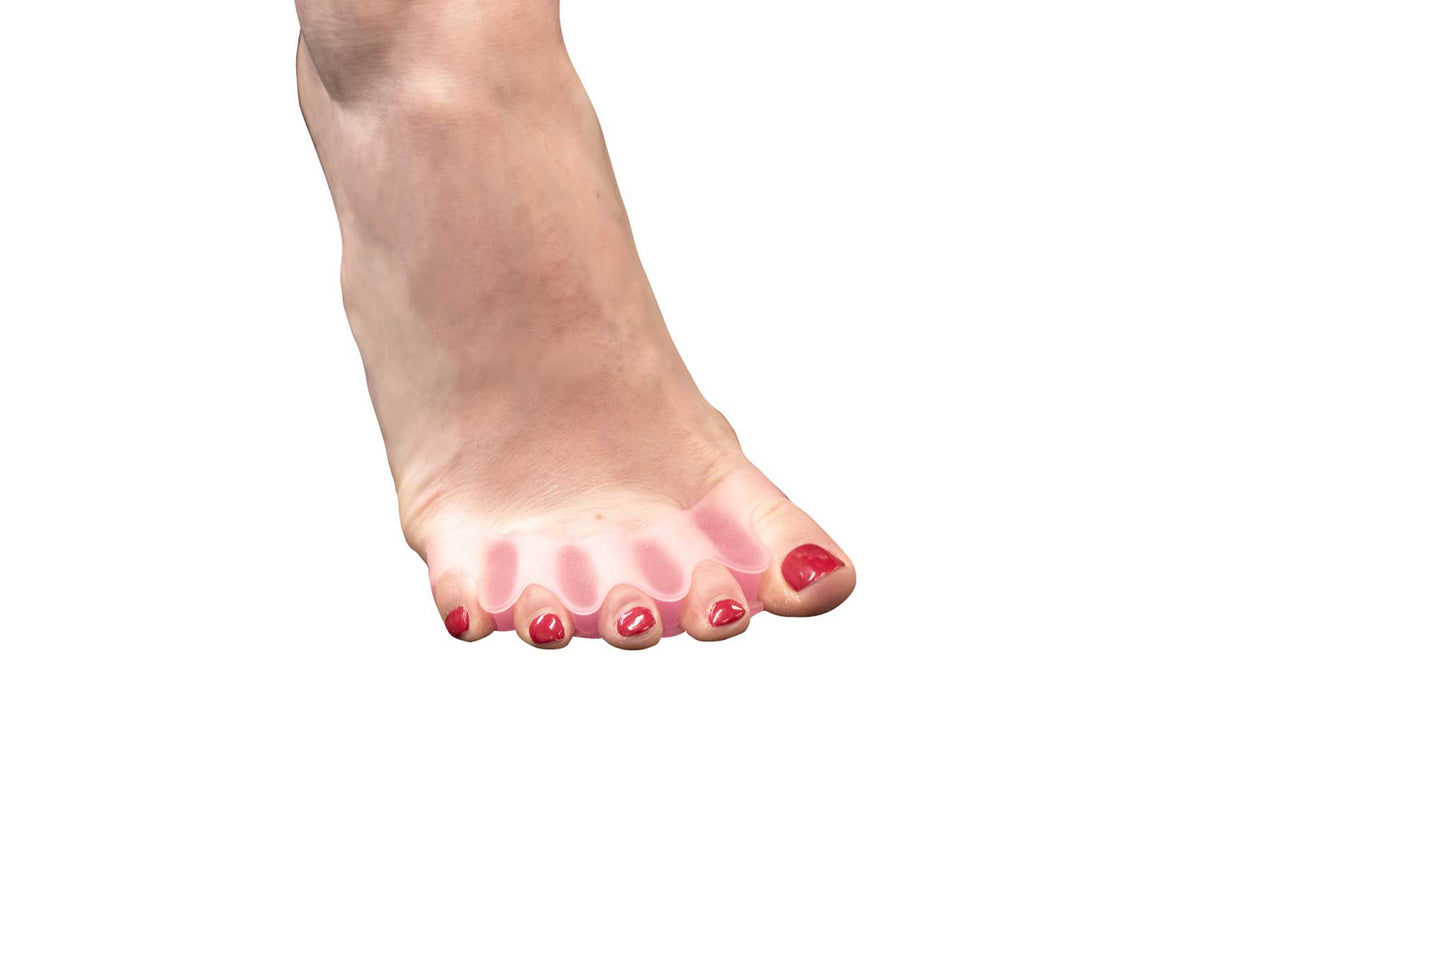 Flamingo Feet - Silicone Toe Spreaders